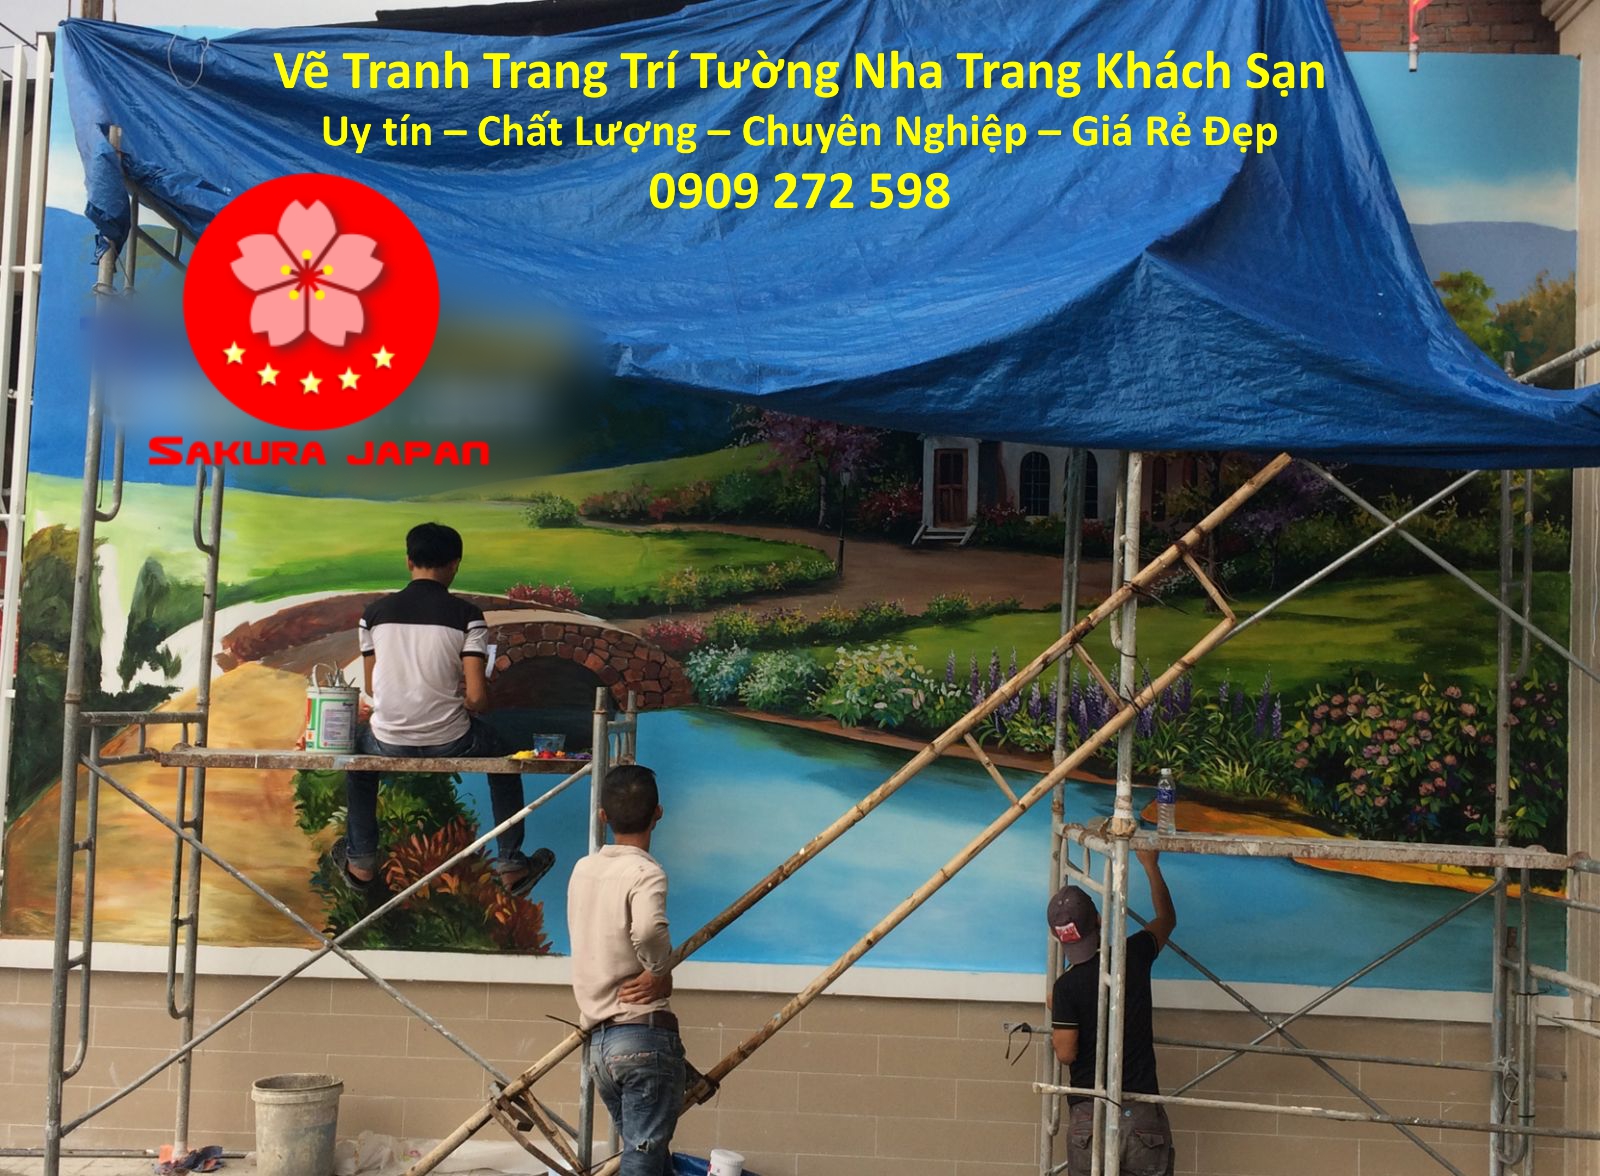 Dịch vụ Vẽ Tranh Tường Nha Trang cho Khách sạn